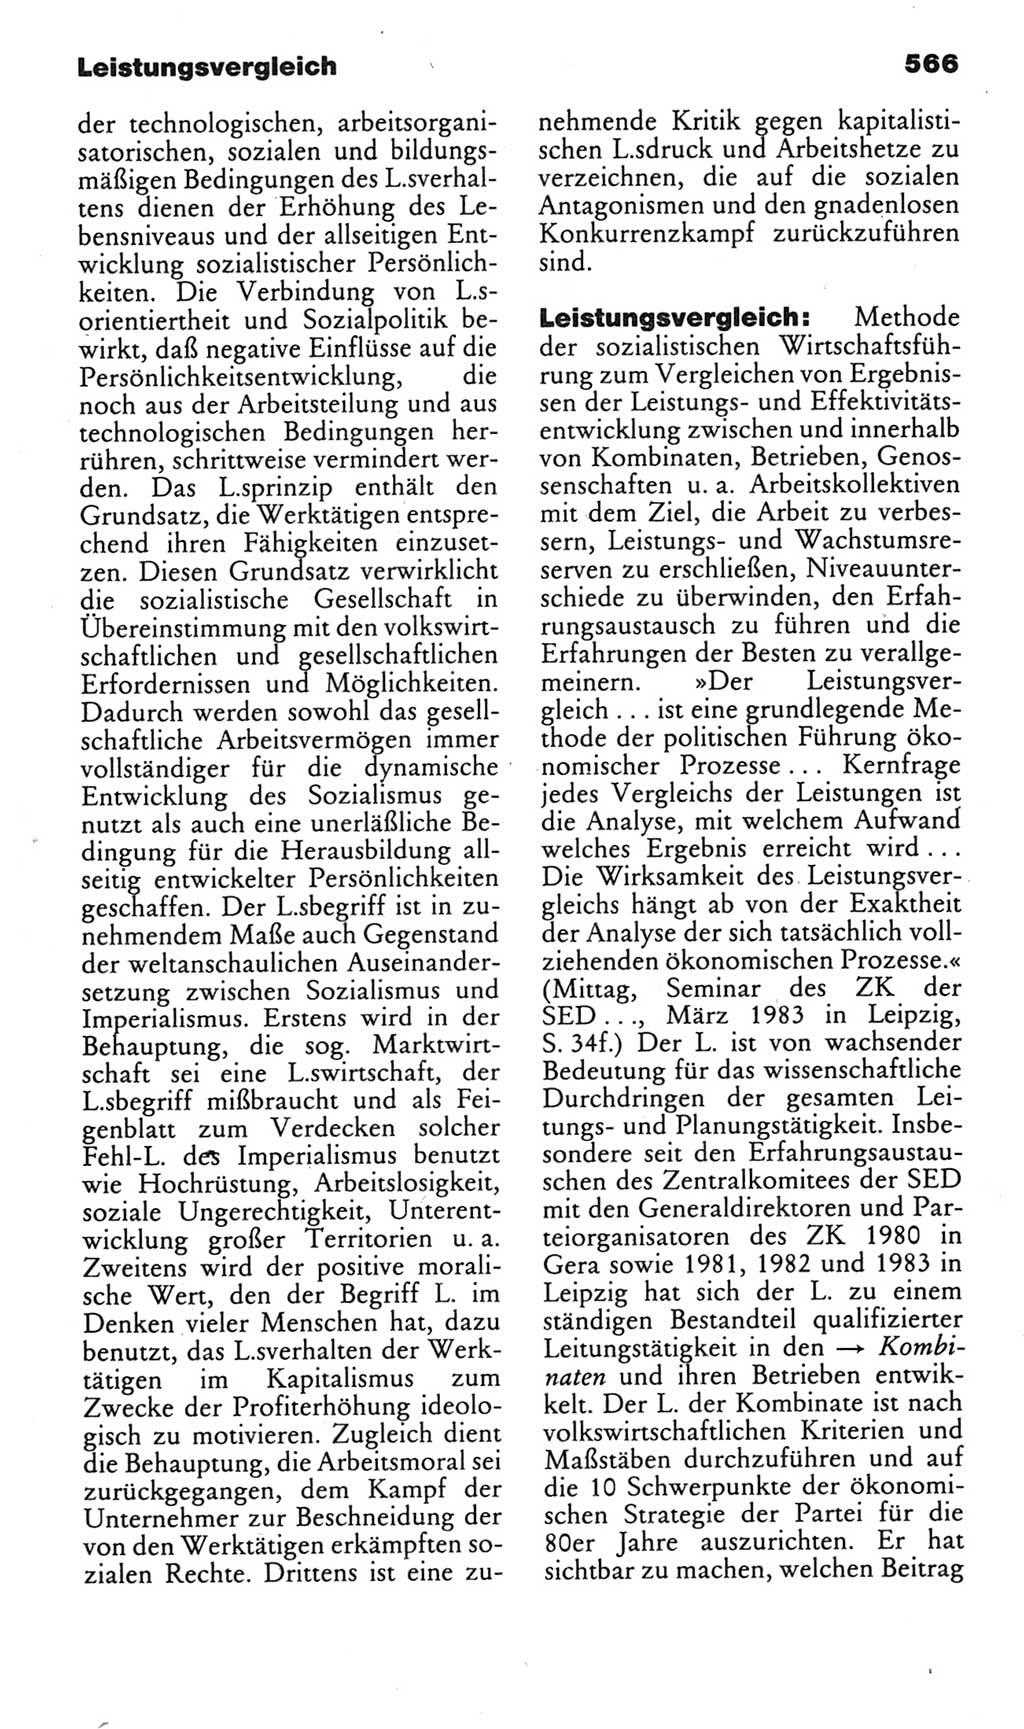 Kleines politisches Wörterbuch [Deutsche Demokratische Republik (DDR)] 1985, Seite 566 (Kl. pol. Wb. DDR 1985, S. 566)